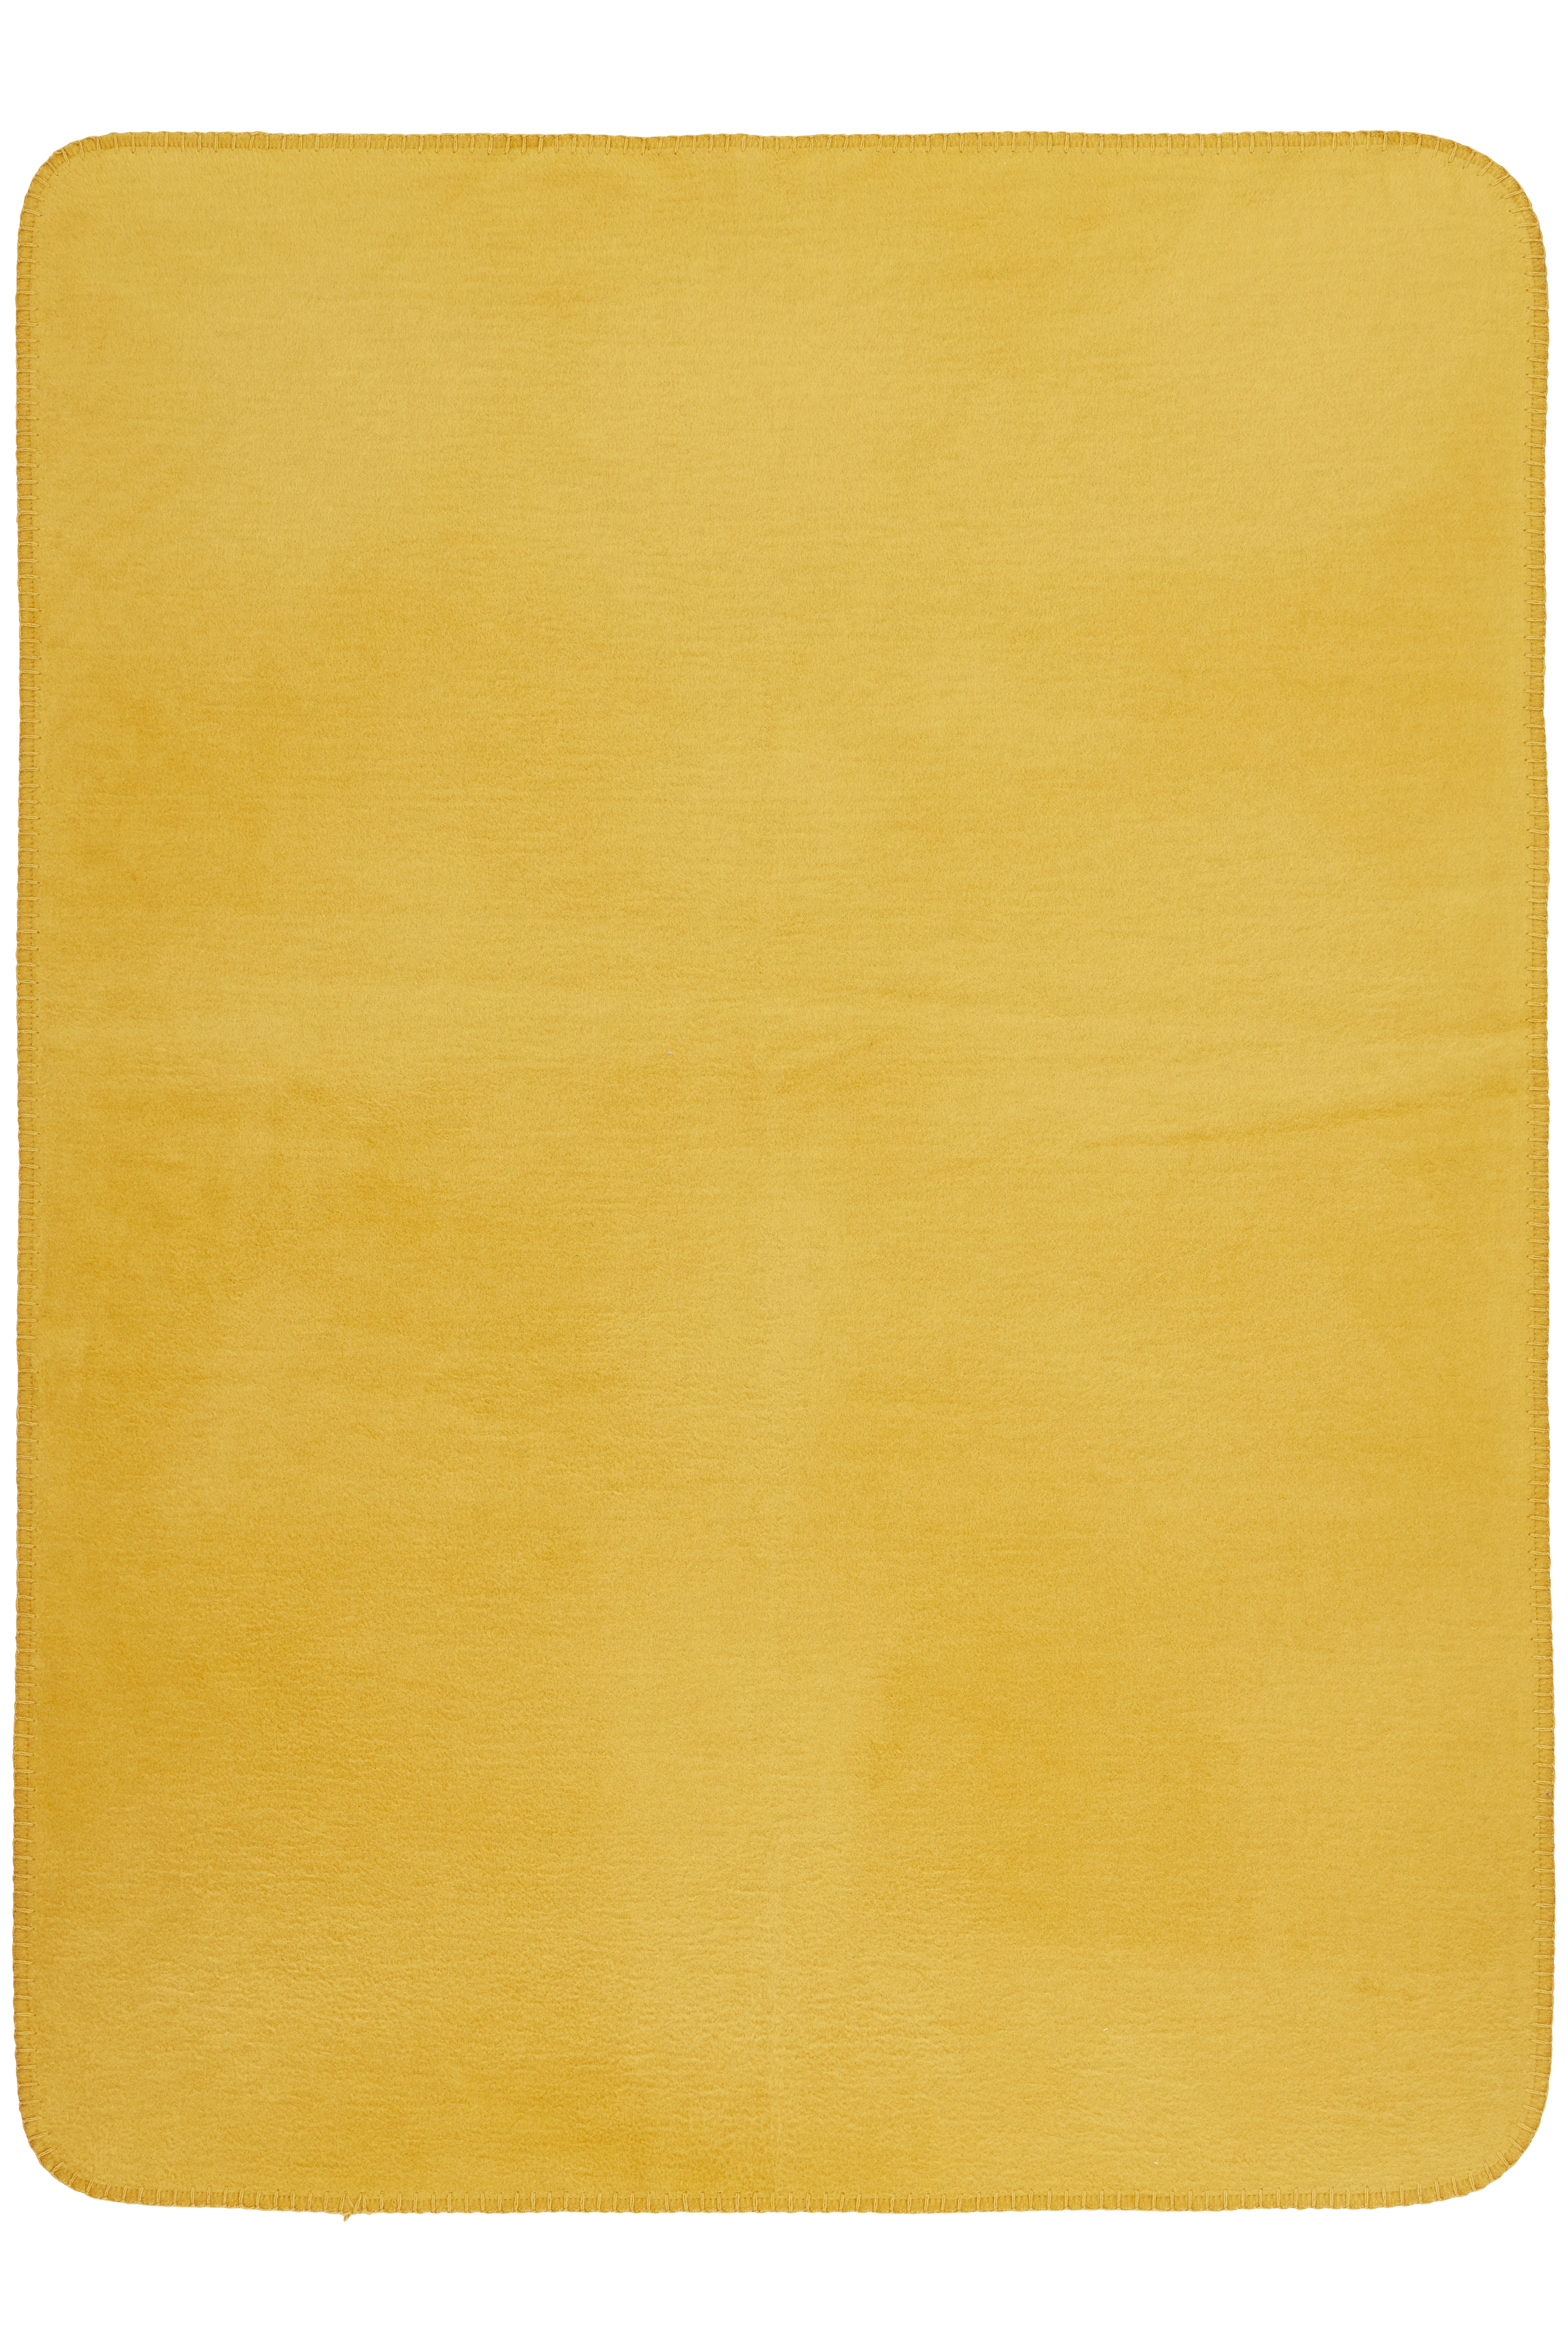 Ledikant deken Double Face - honey gold/grey melange - 100x150cm